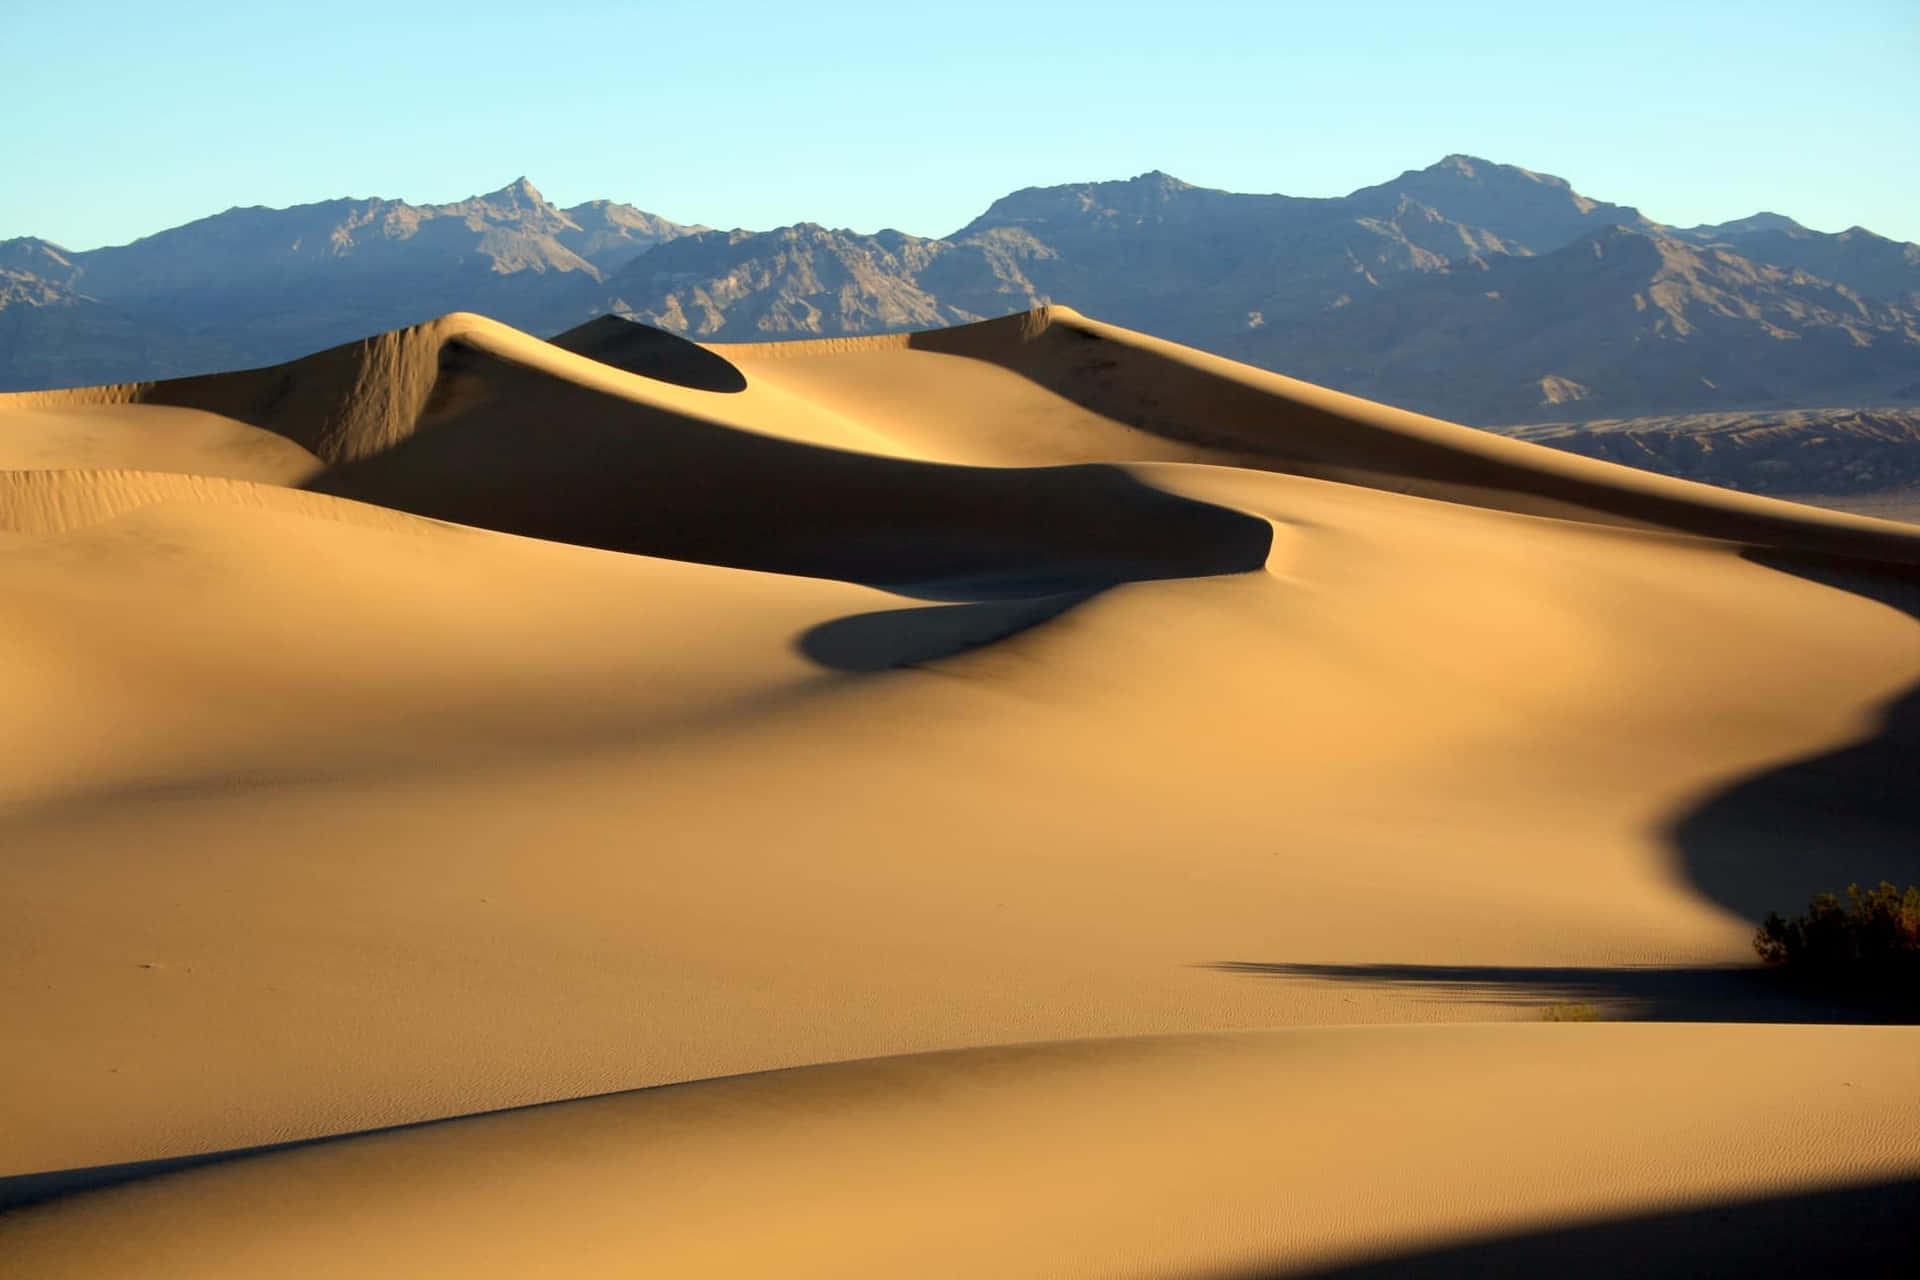 Enter the world of Dune